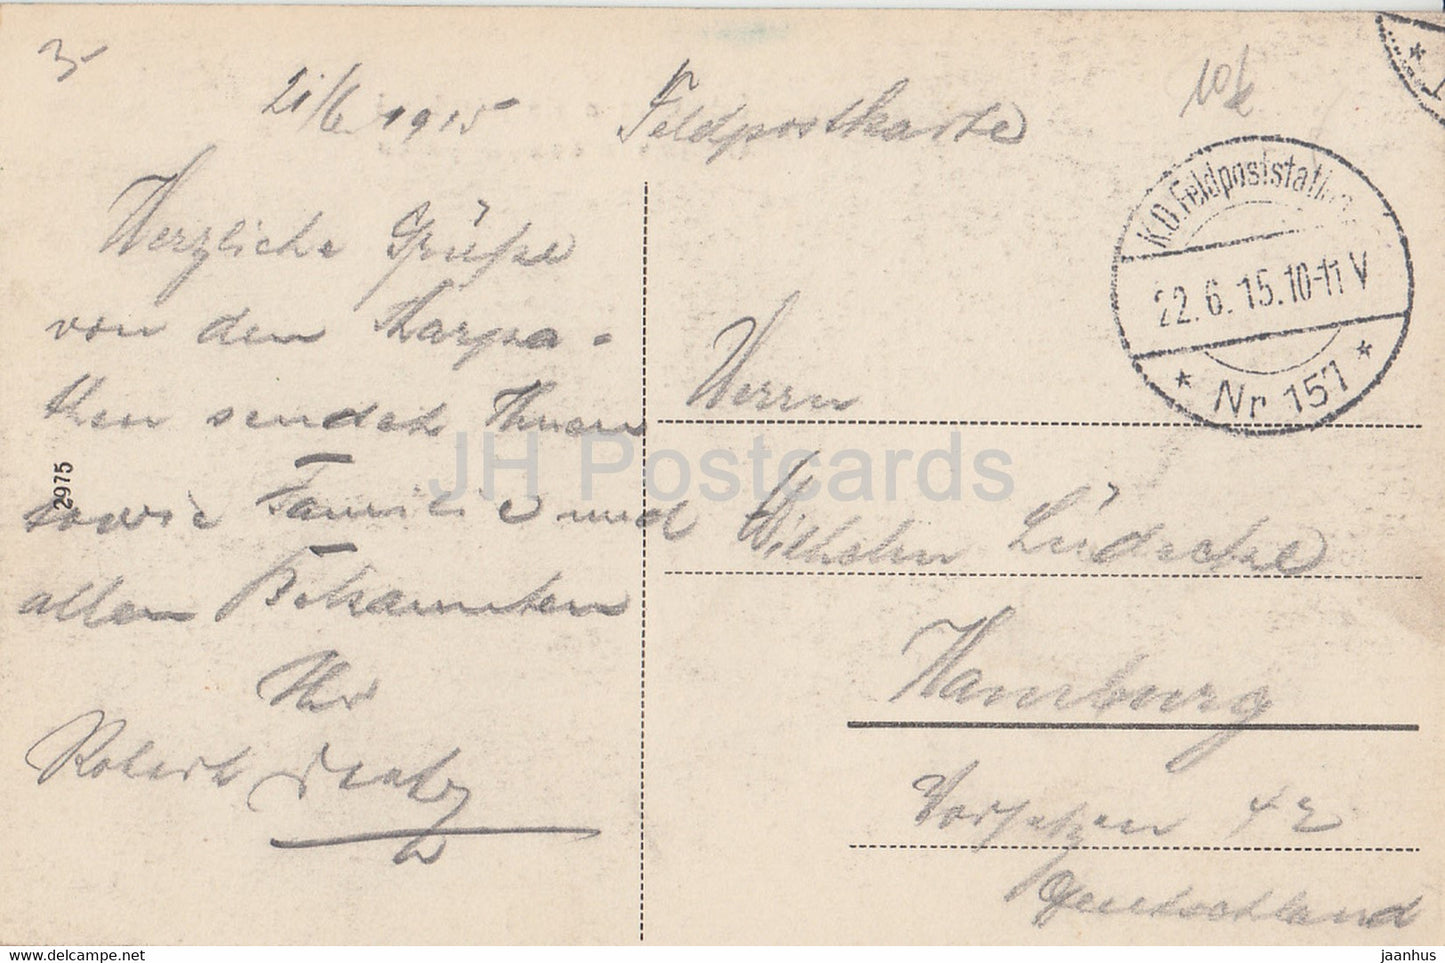 Udvozlet a Karpatokbol - Gruss von den Karpaten - Carpates - Feldpost - carte postale ancienne - 1915 - Hongrie - utilisé